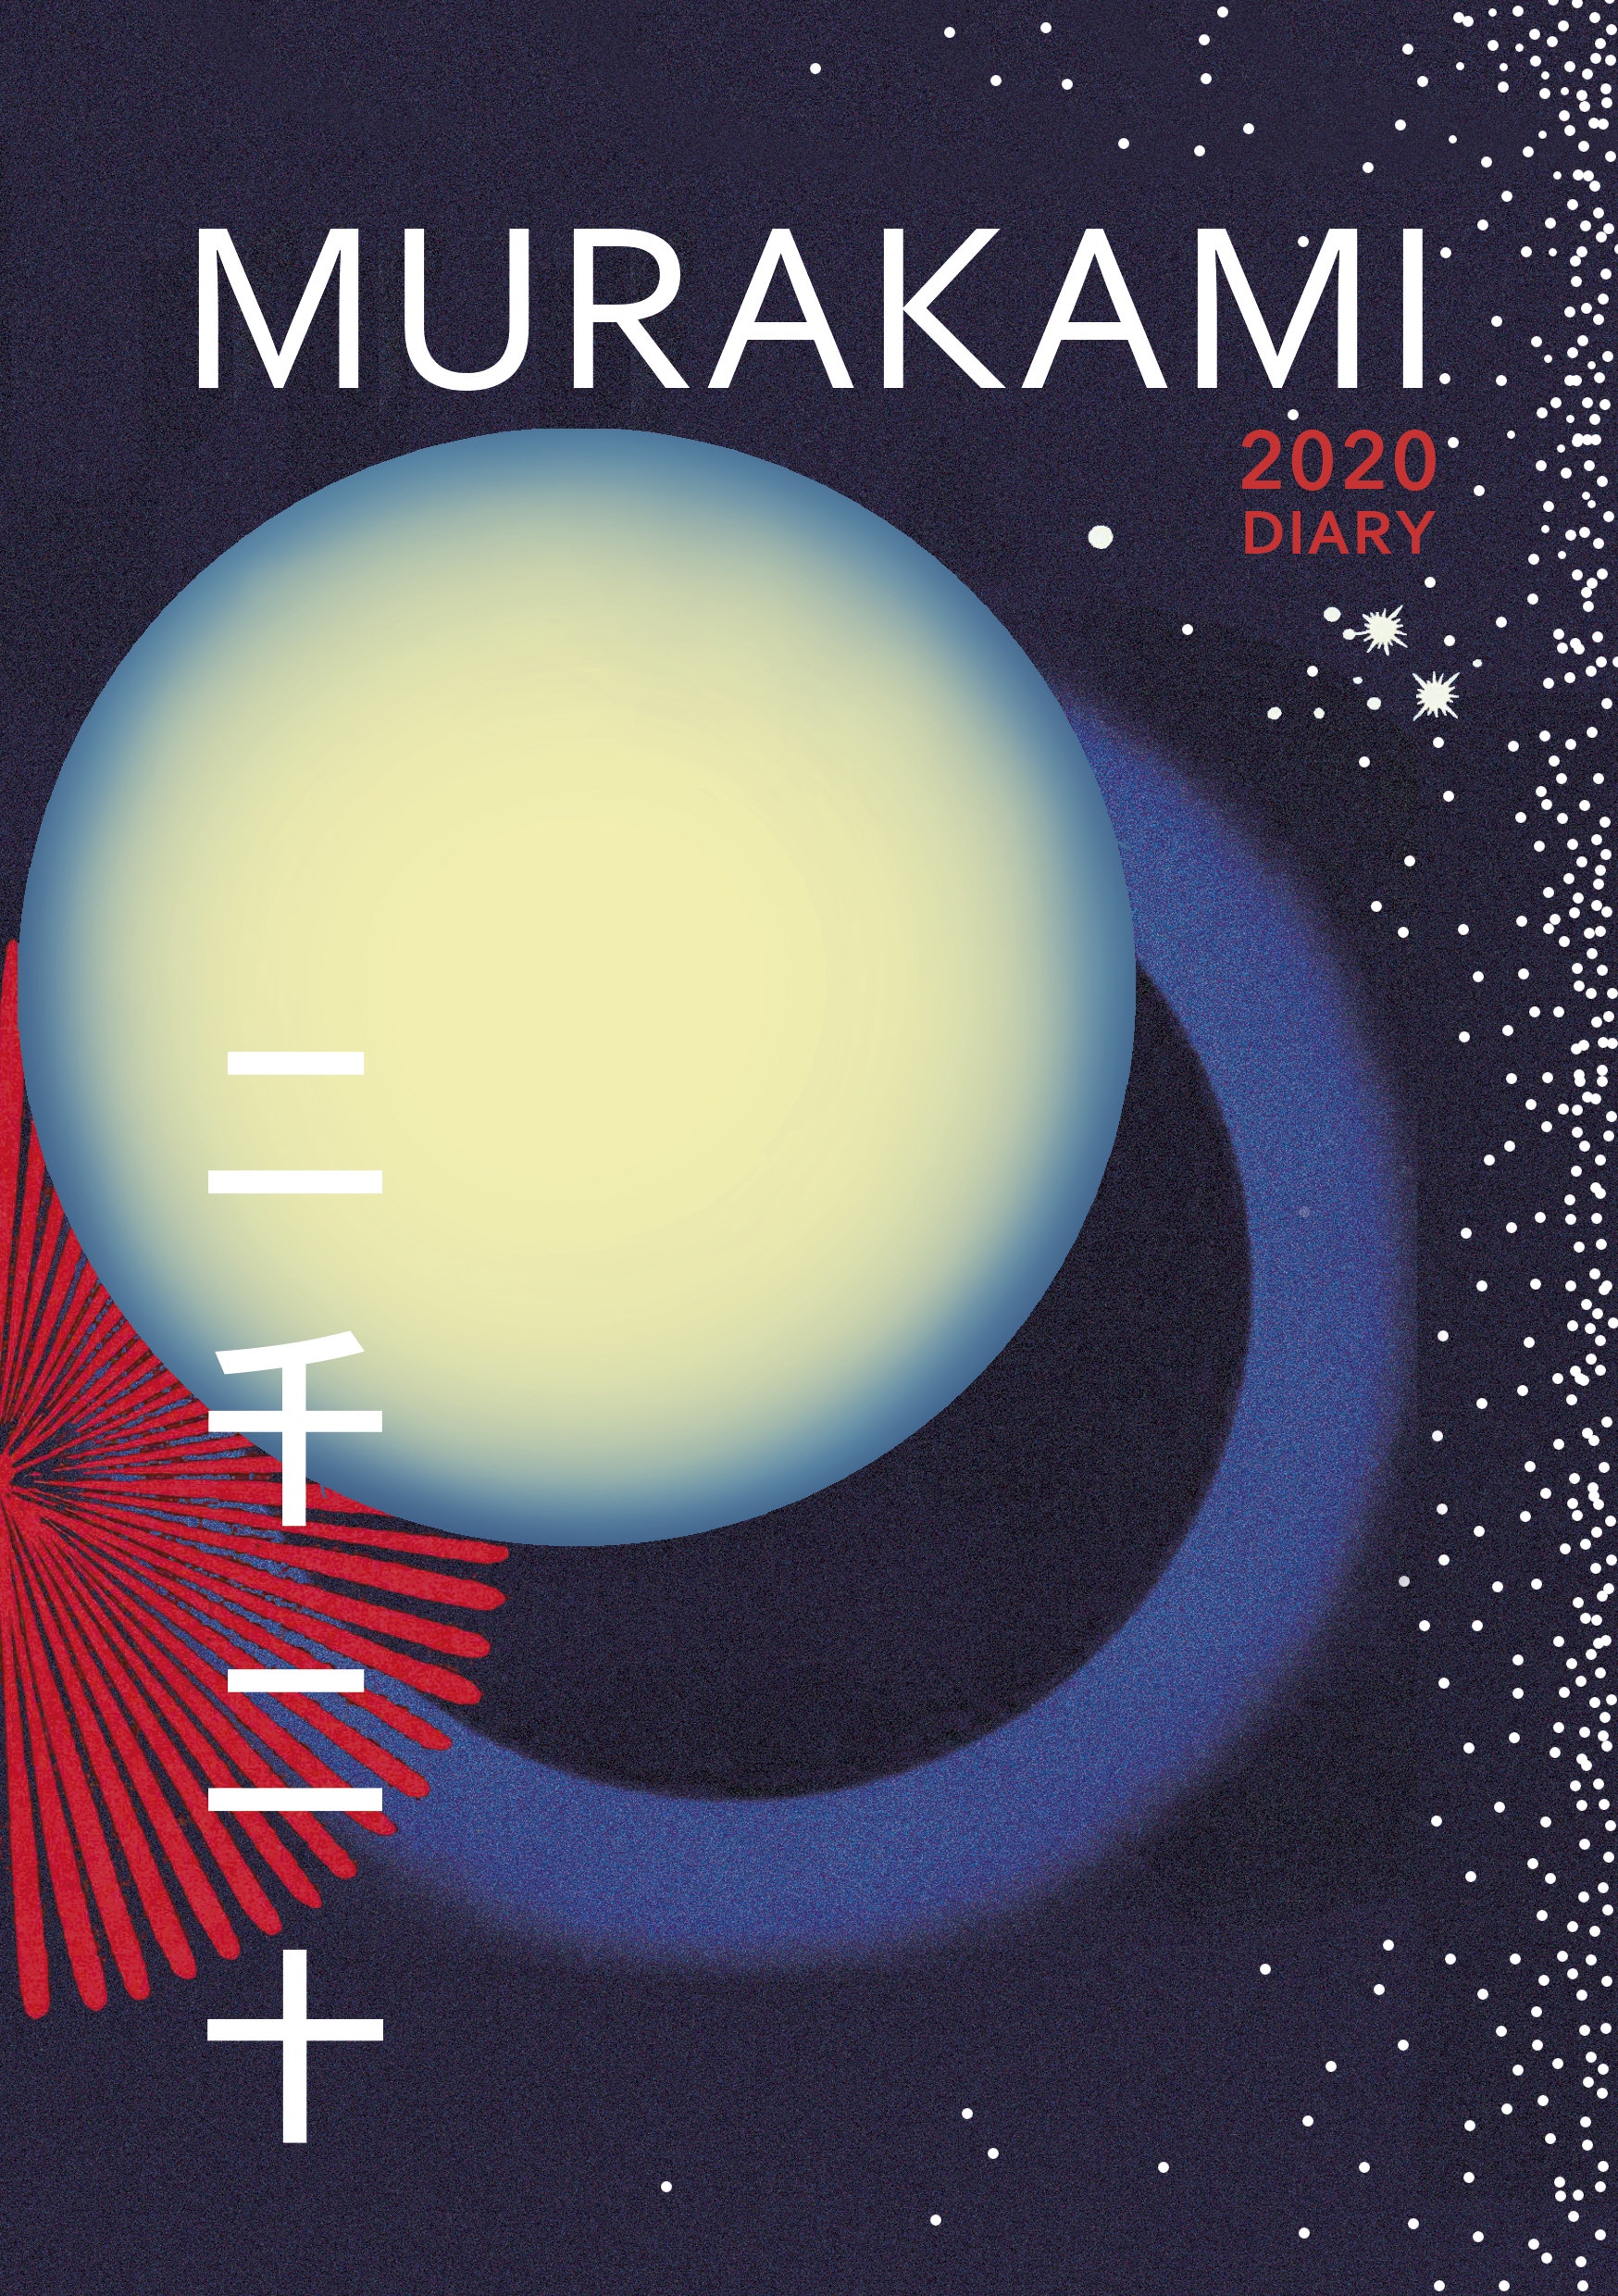 Book “Murakami 2020 Diary” by Haruki Murakami — August 8, 2019